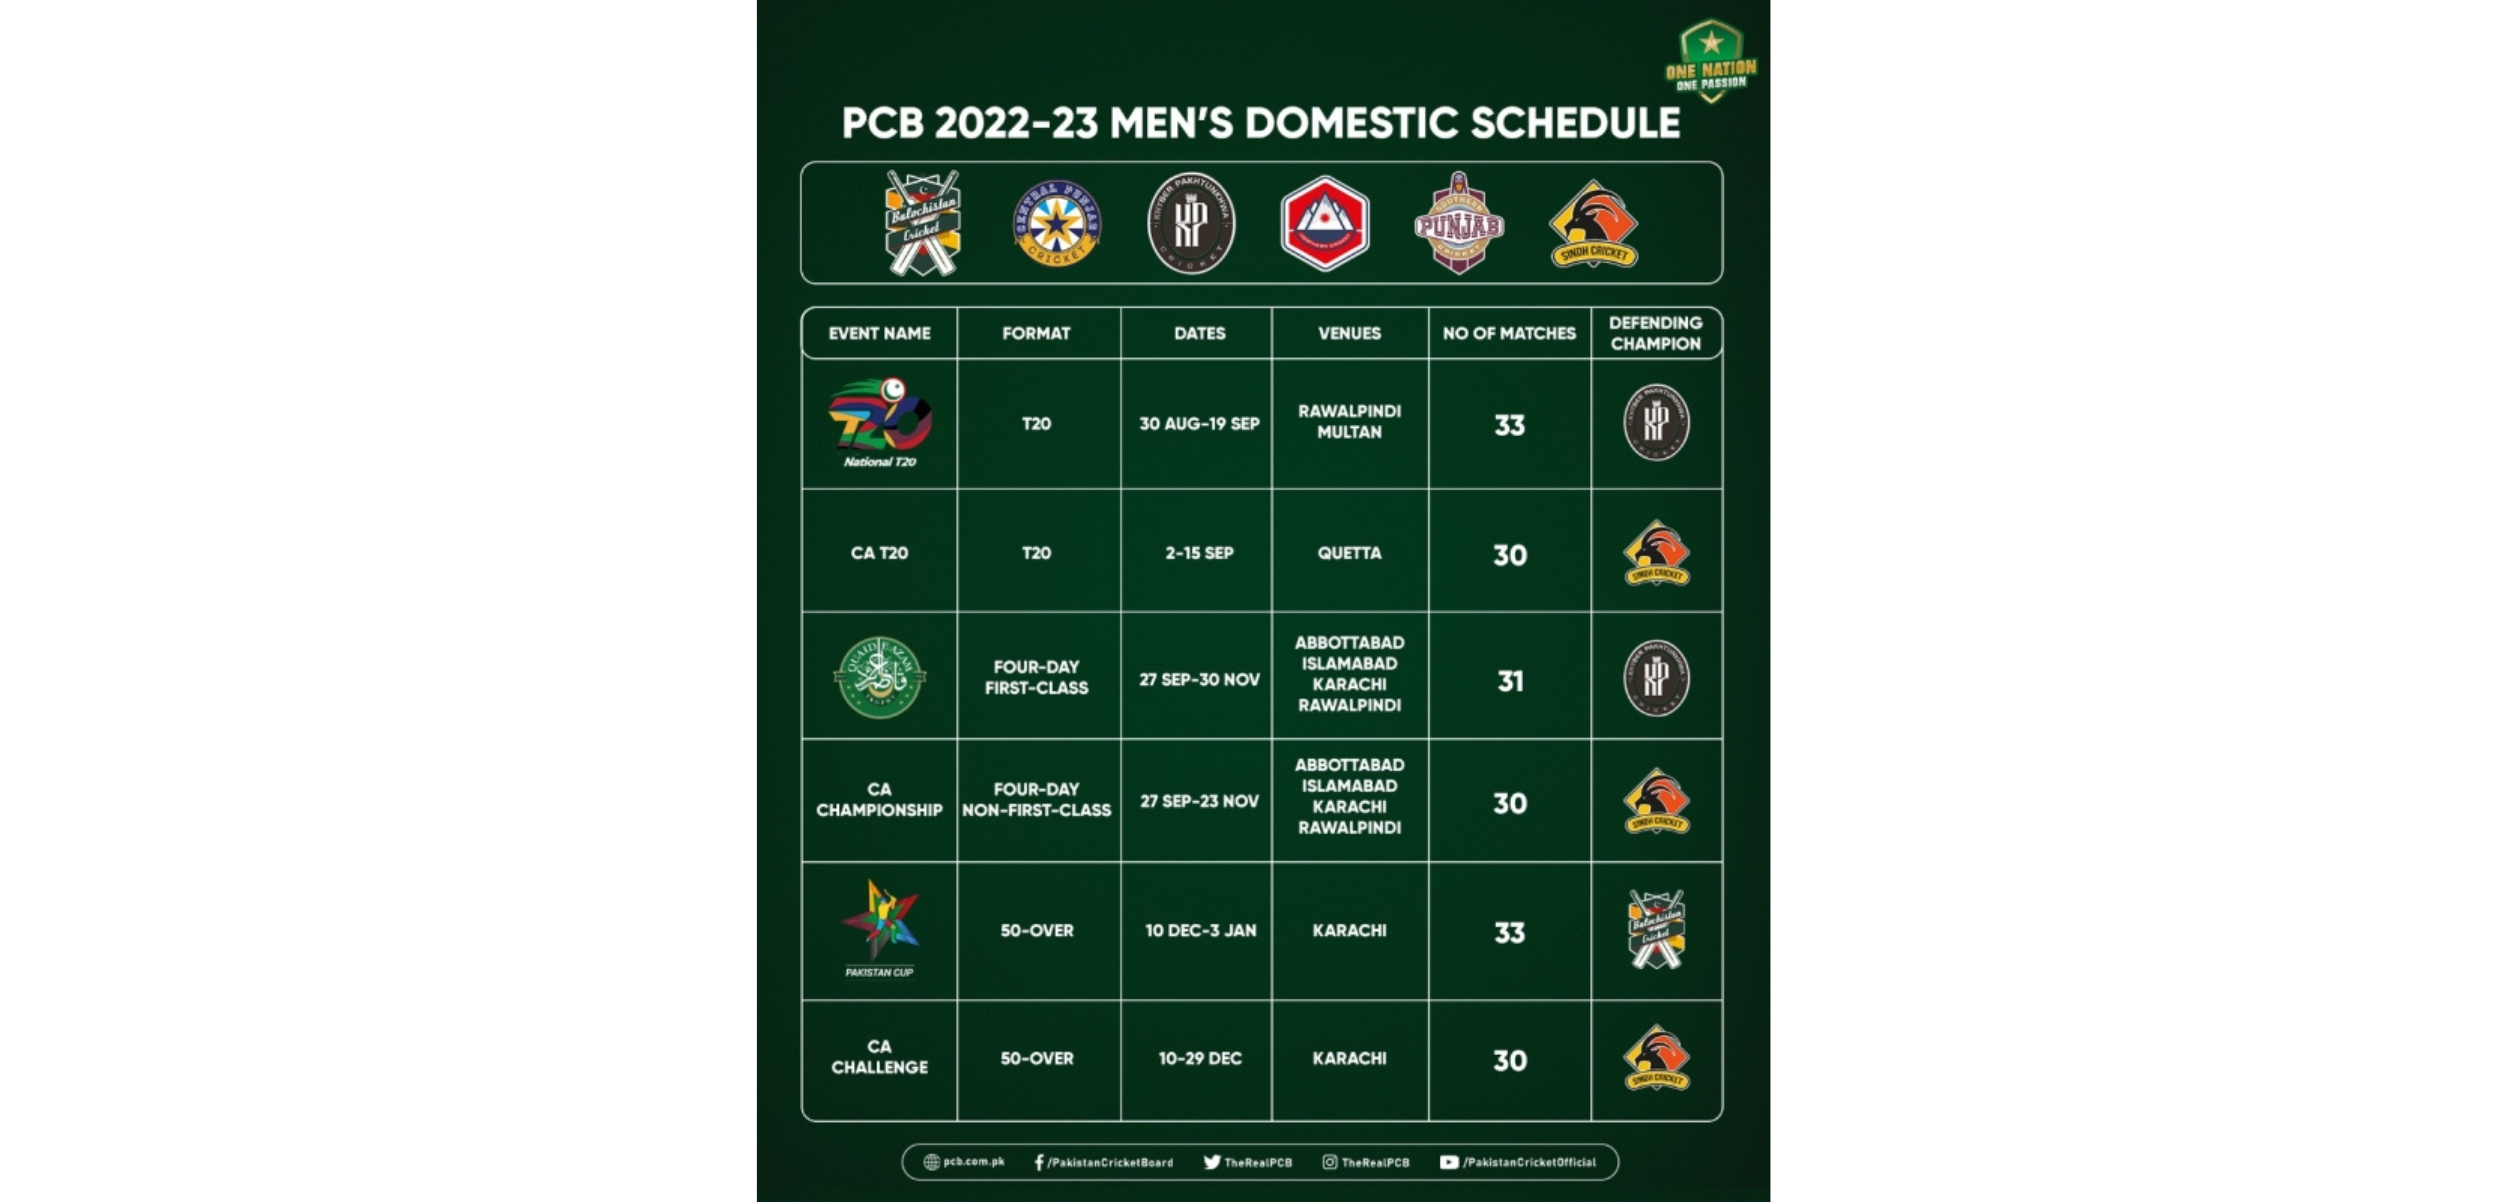 PCB unveils 2022-23 men's domestic cricket season schedule